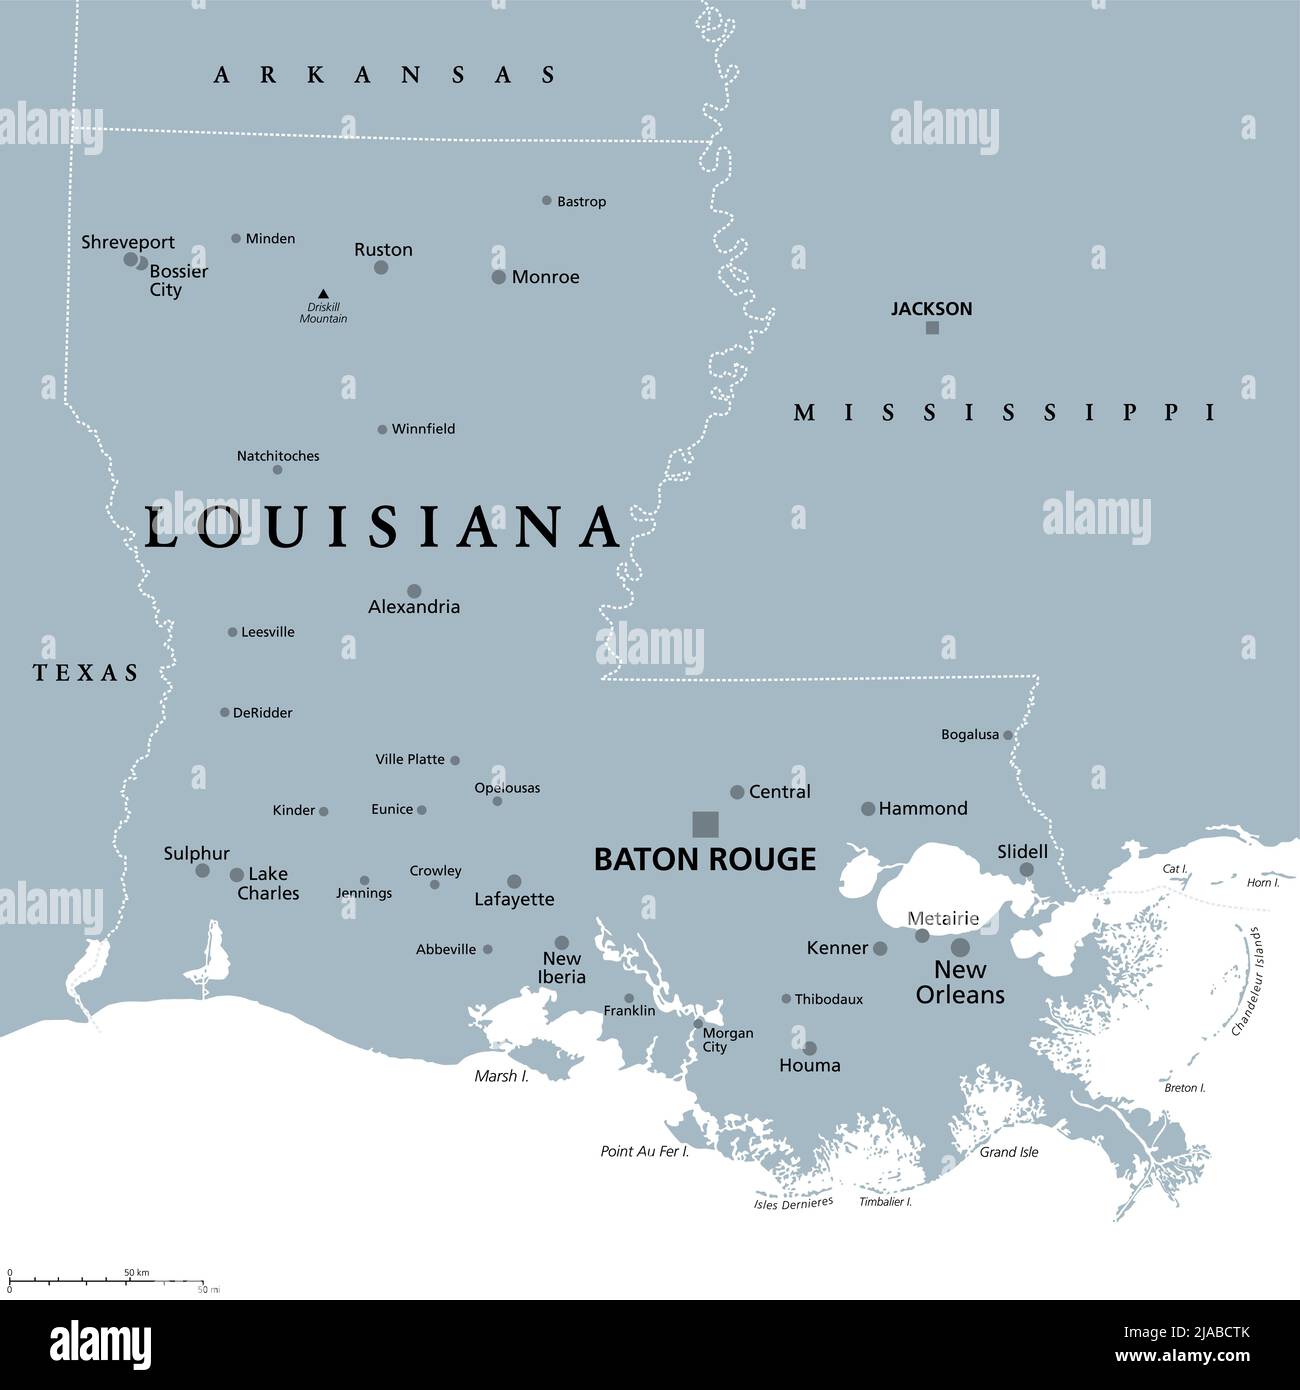 Louisiana, LA, graue politische Landkarte mit der Hauptstadt Baton Rouge und dem Stadtgebiet New Orleans. Staat in den Regionen Deep South und South Central der USA. Stockfoto